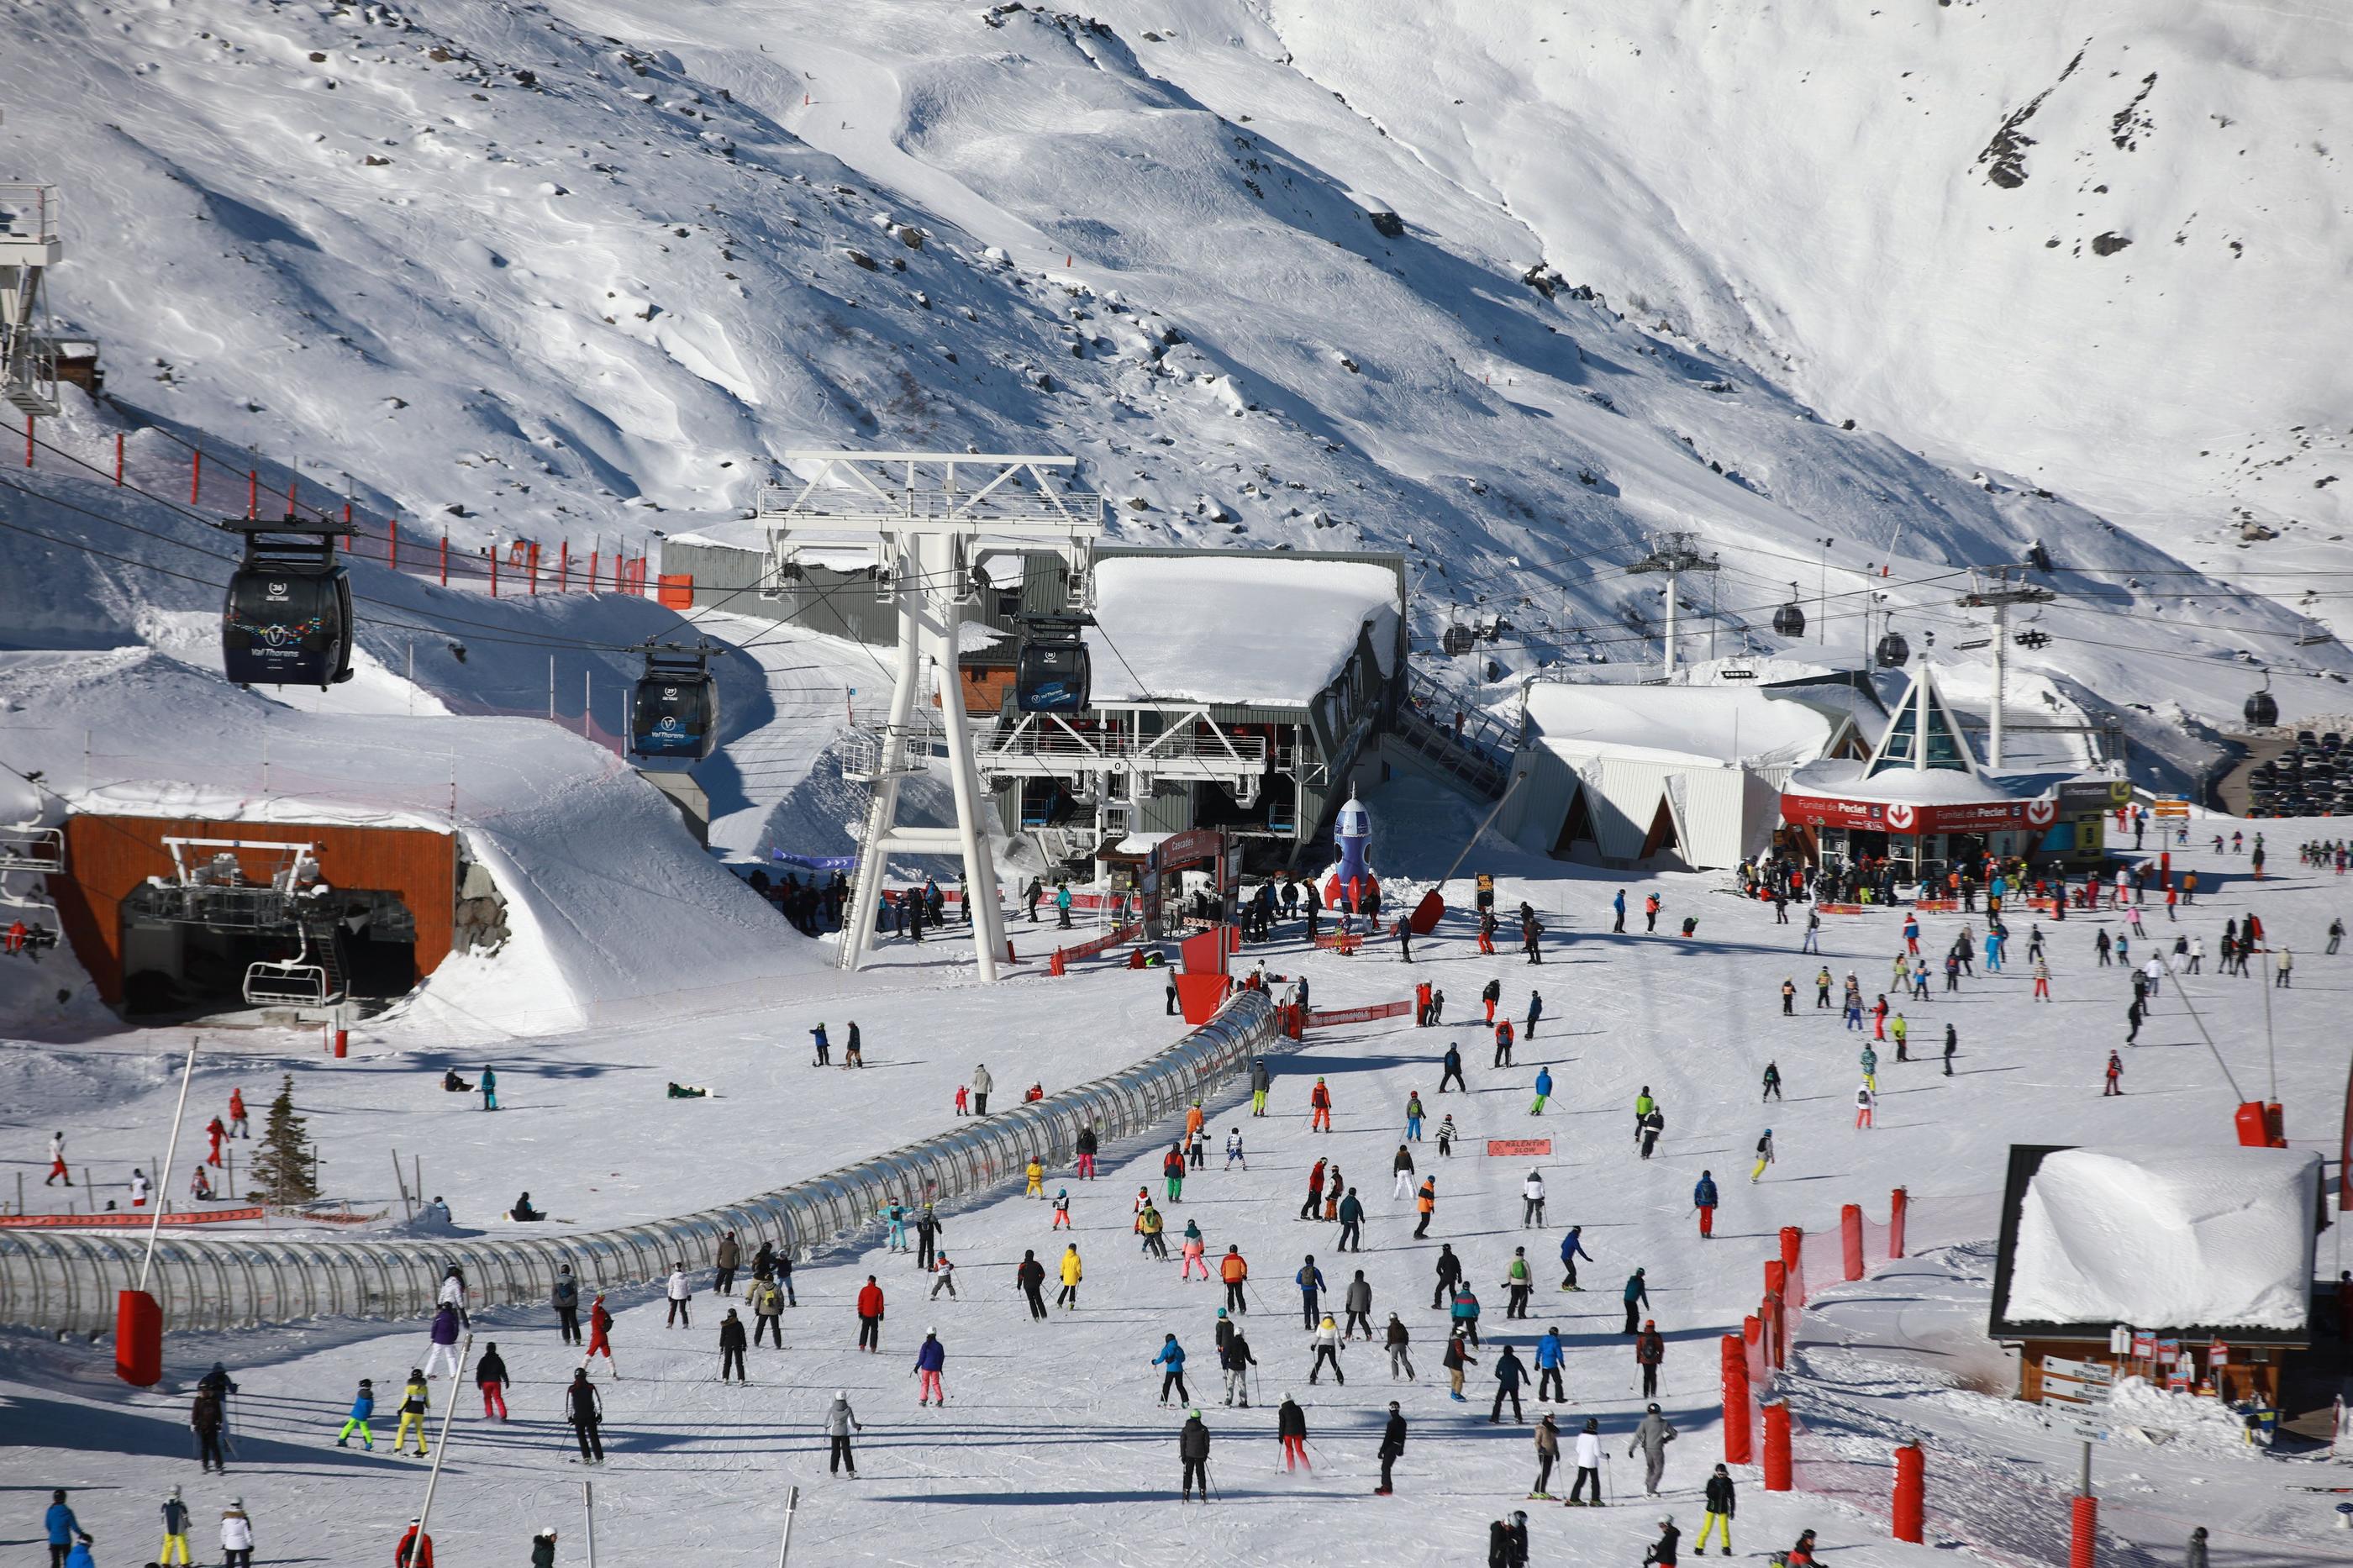 Les skieurs sont au rendez-vous de ce début de saison dans les Alpes, comme ici à Val-Thorens (Savoie). (Illustration) LP/Olivier Arandel